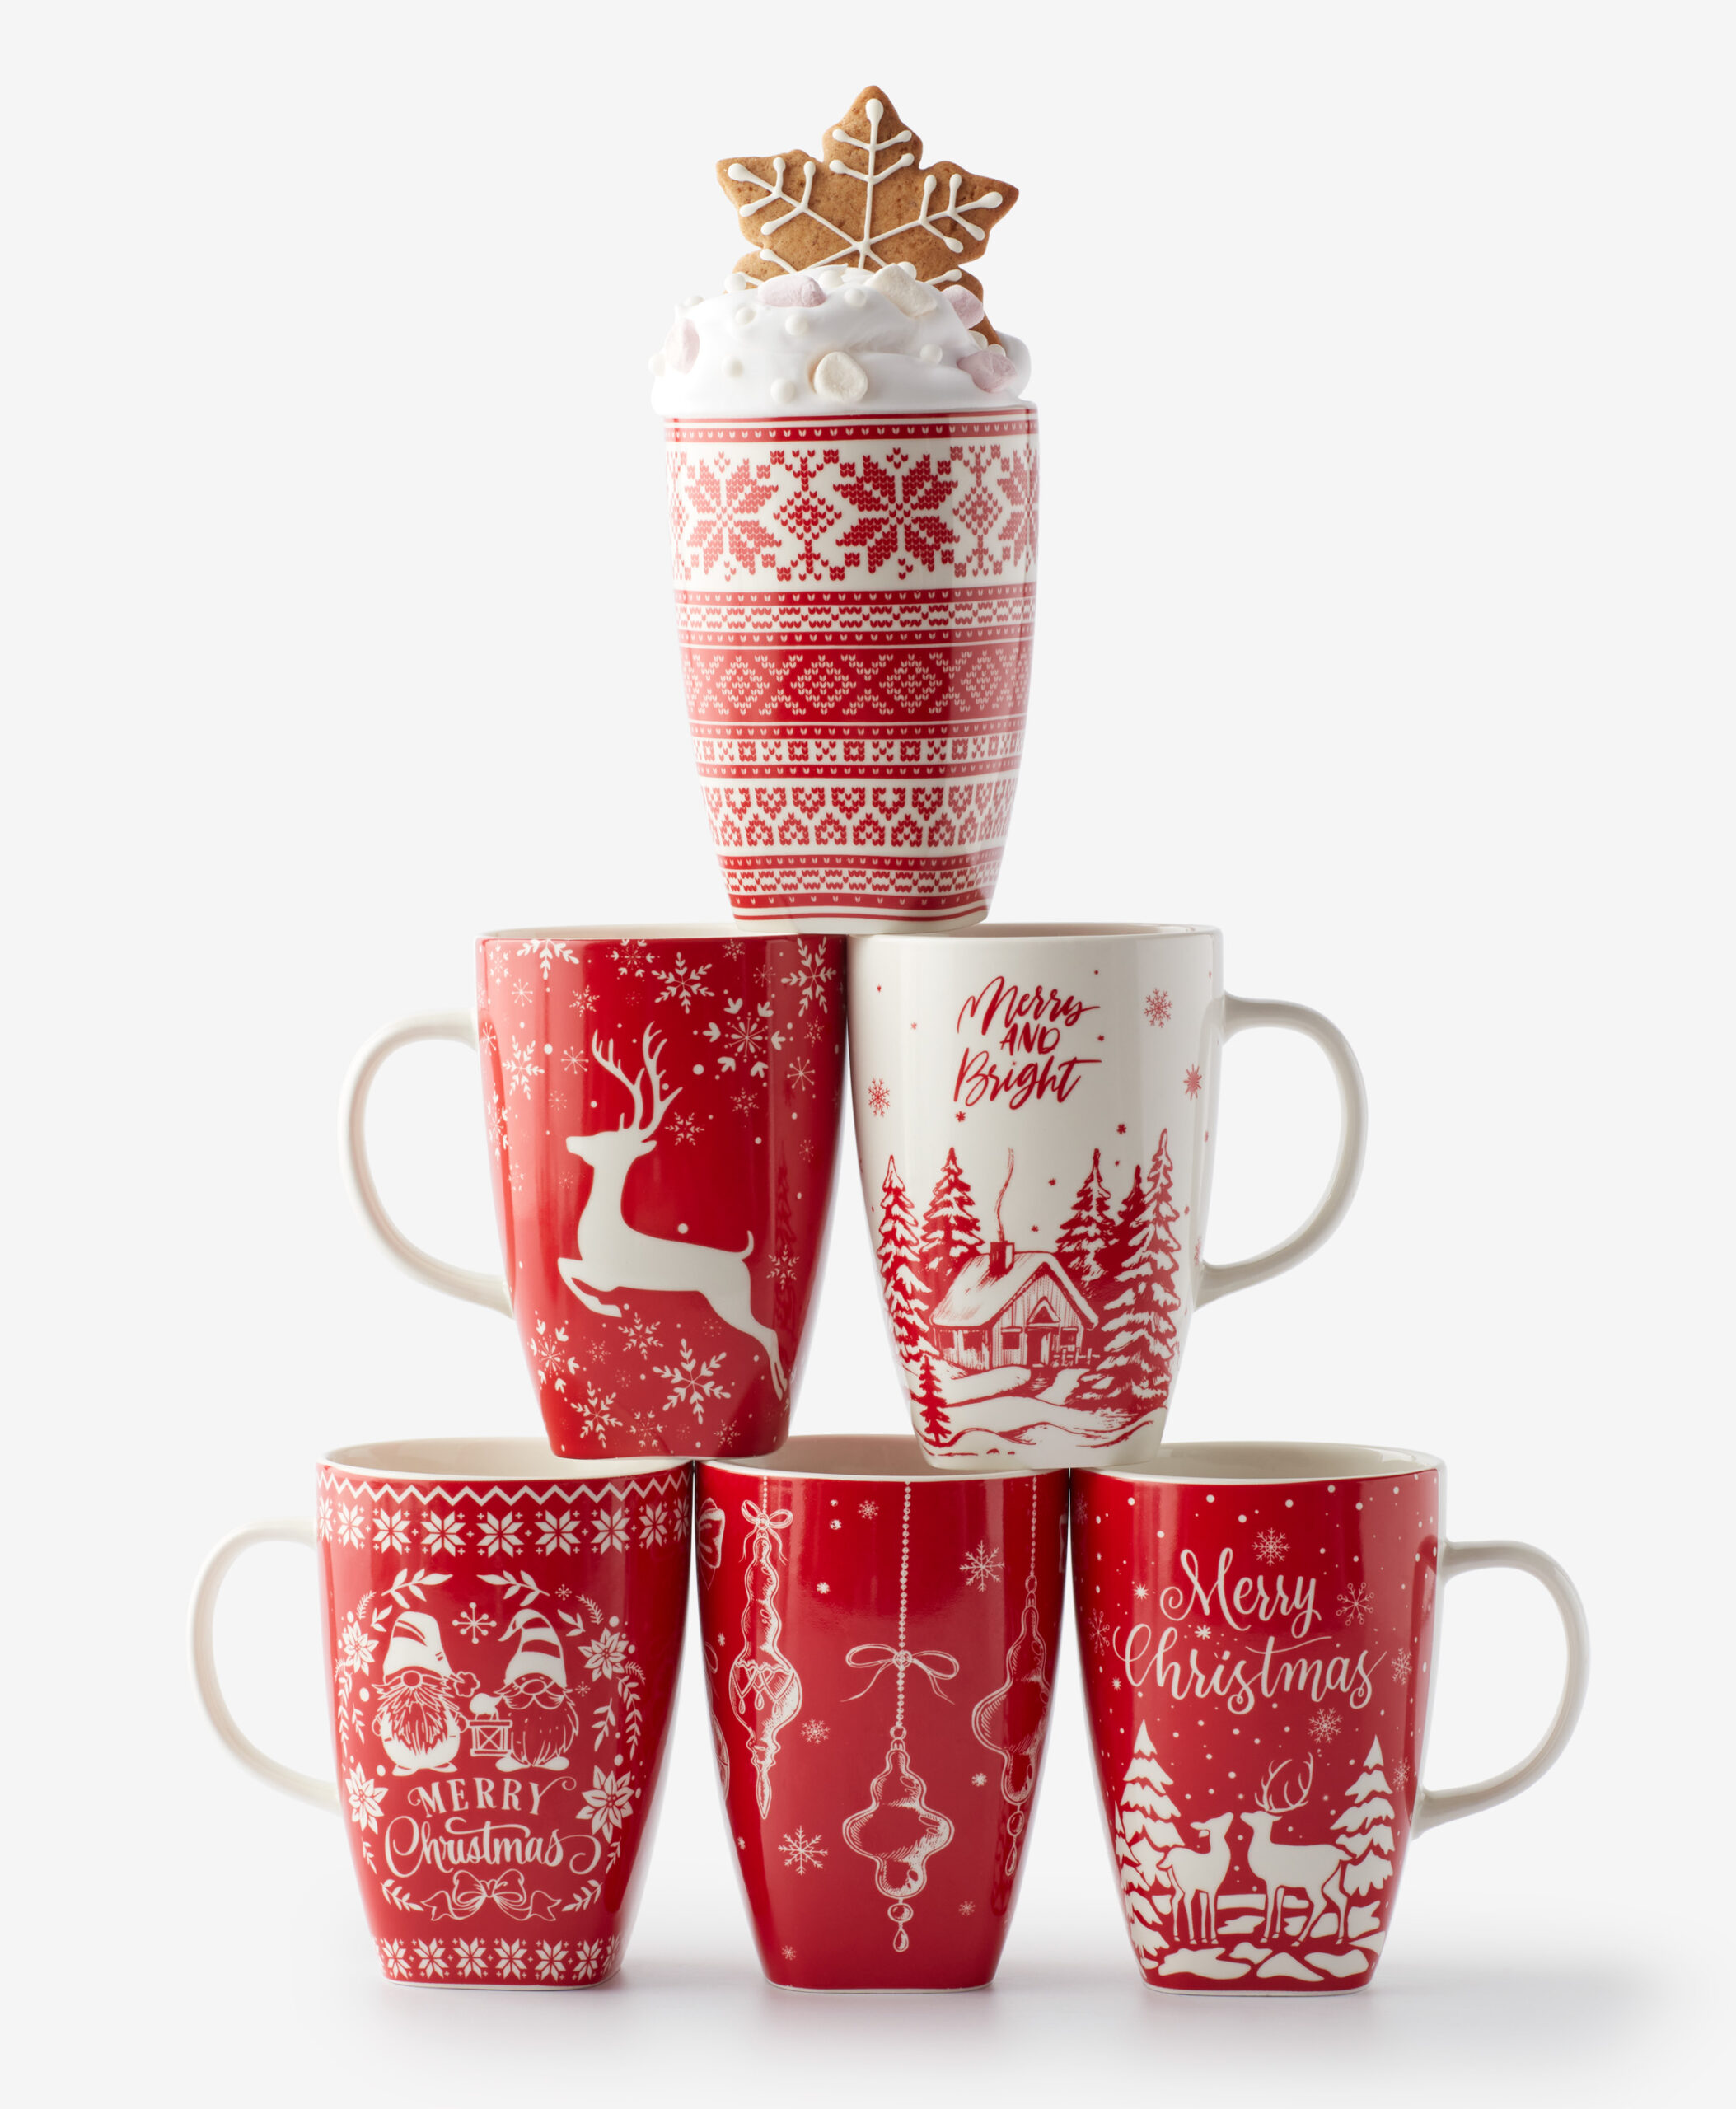 Pepco incluye en su catálogo HO HO HO estas tazas de Navidad a 5 € y se  venden como churros